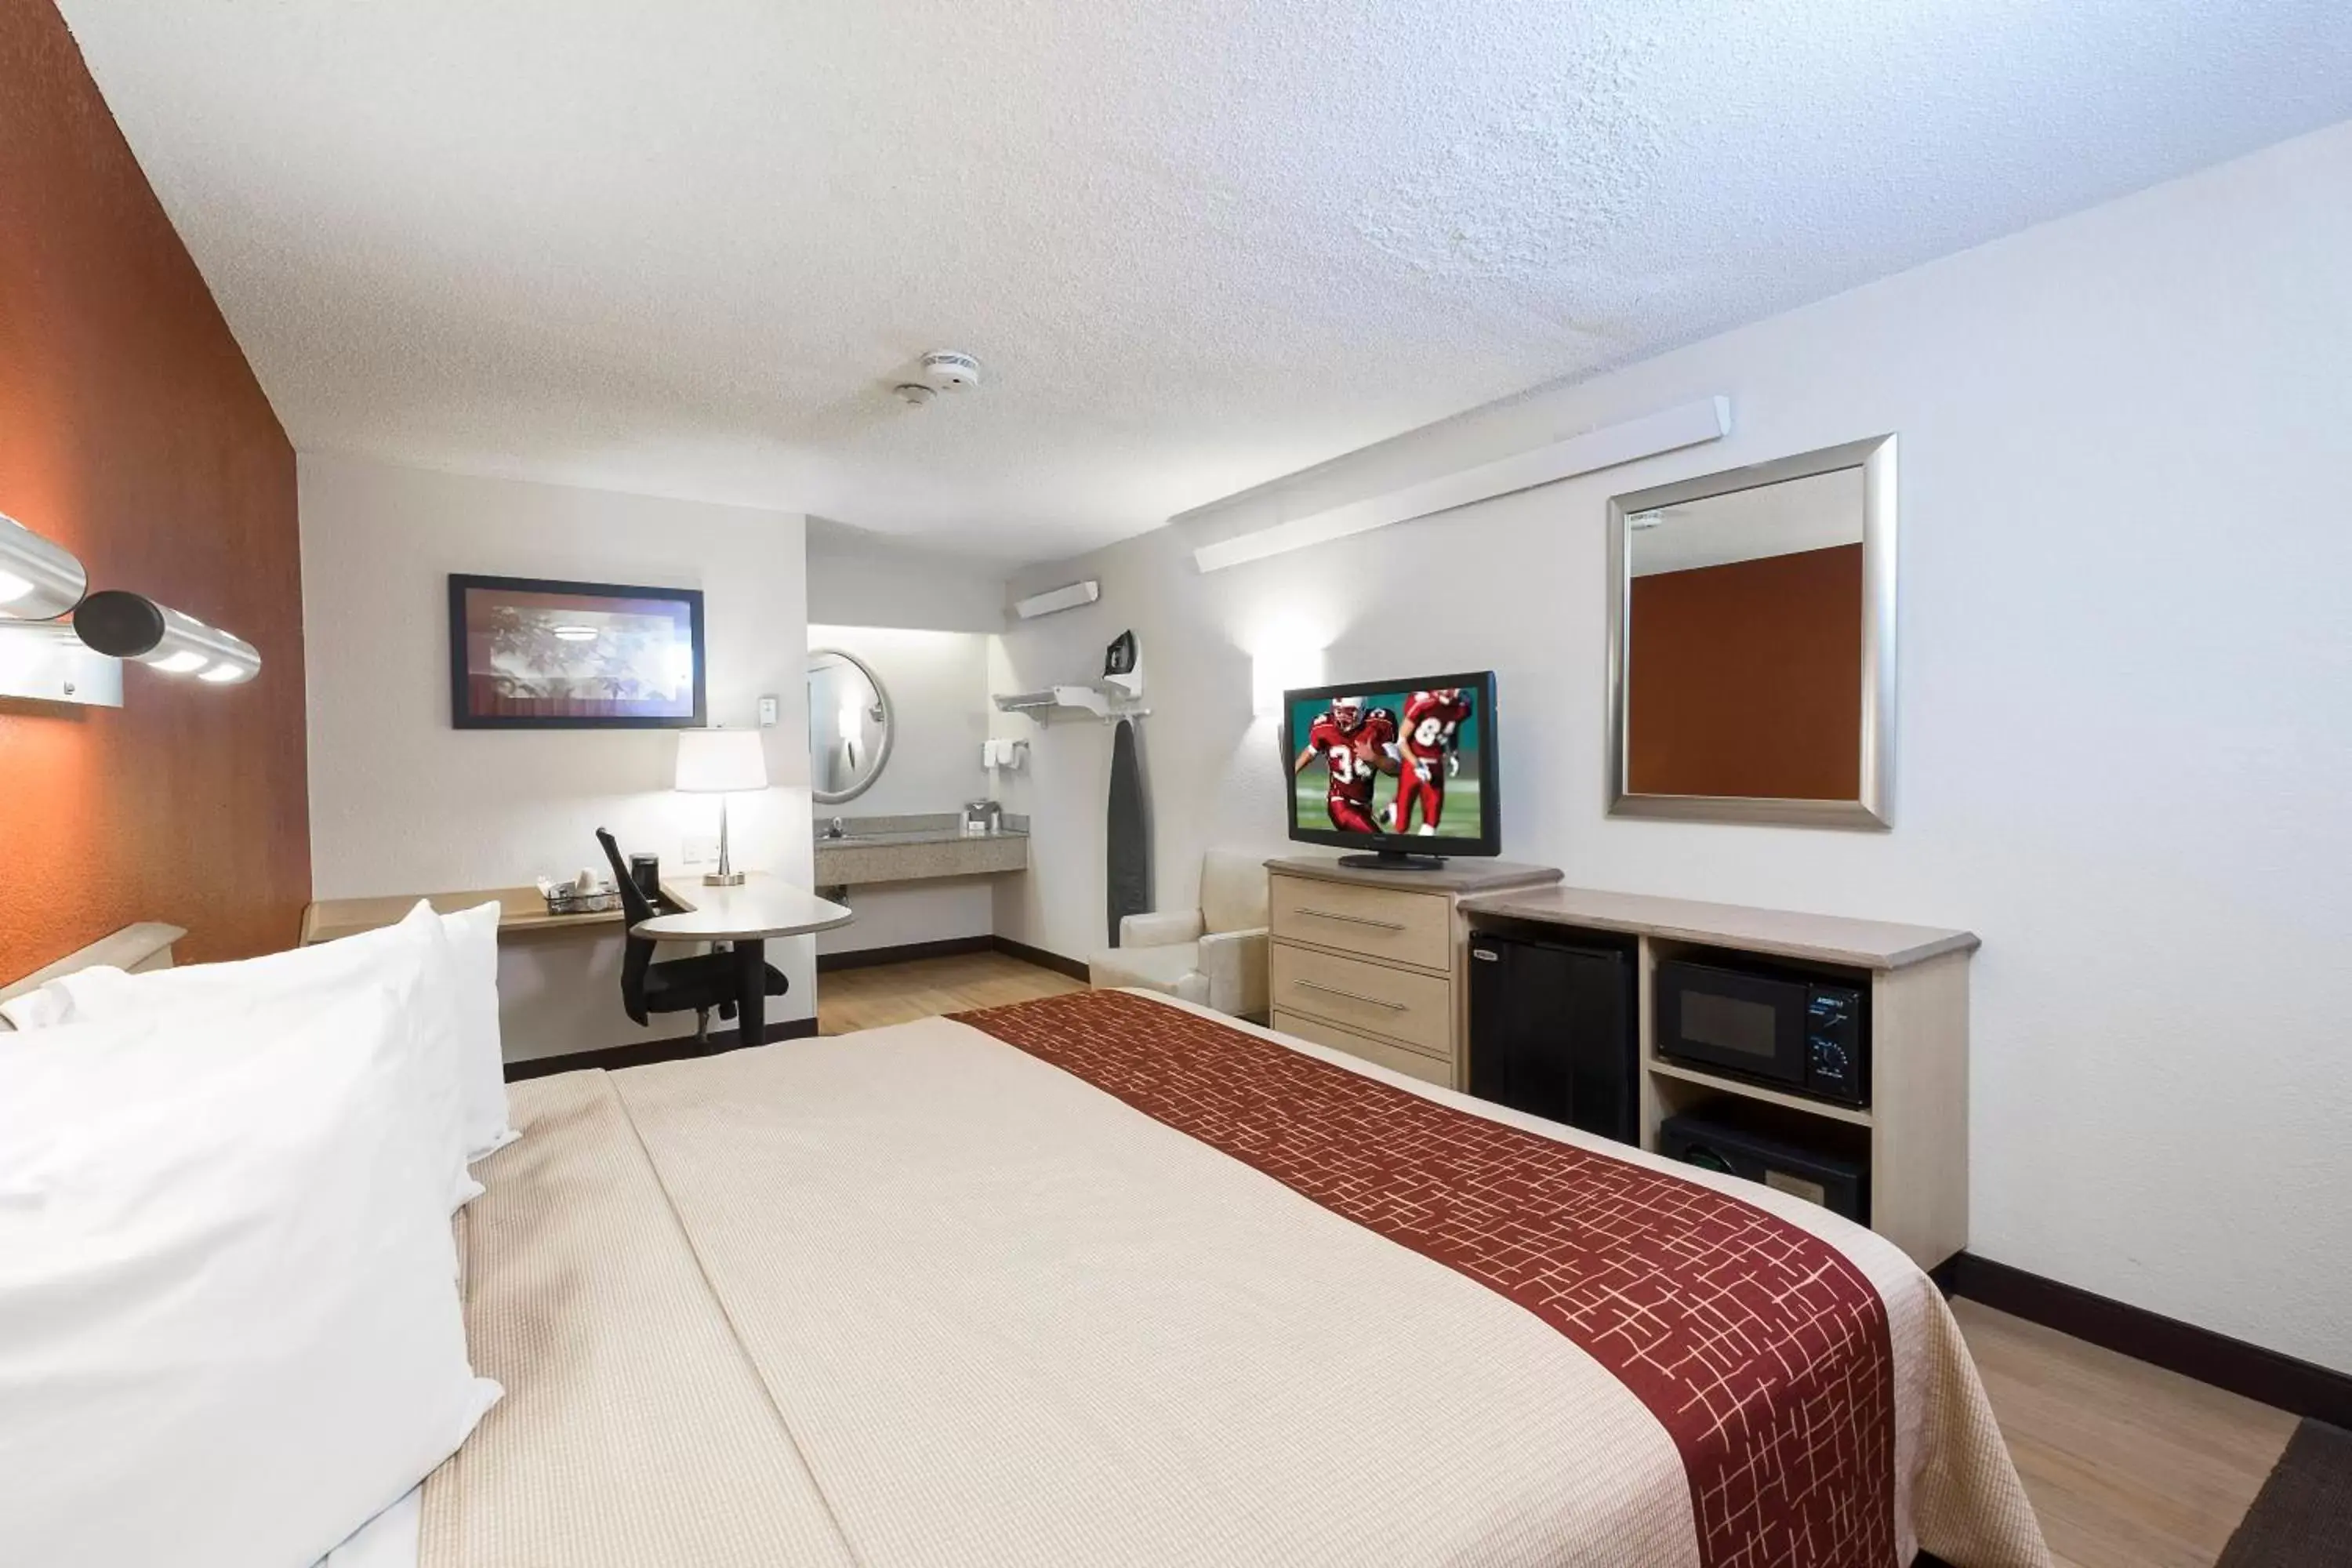 Bedroom, Room Photo in Red Roof Inn Chicago - Joliet